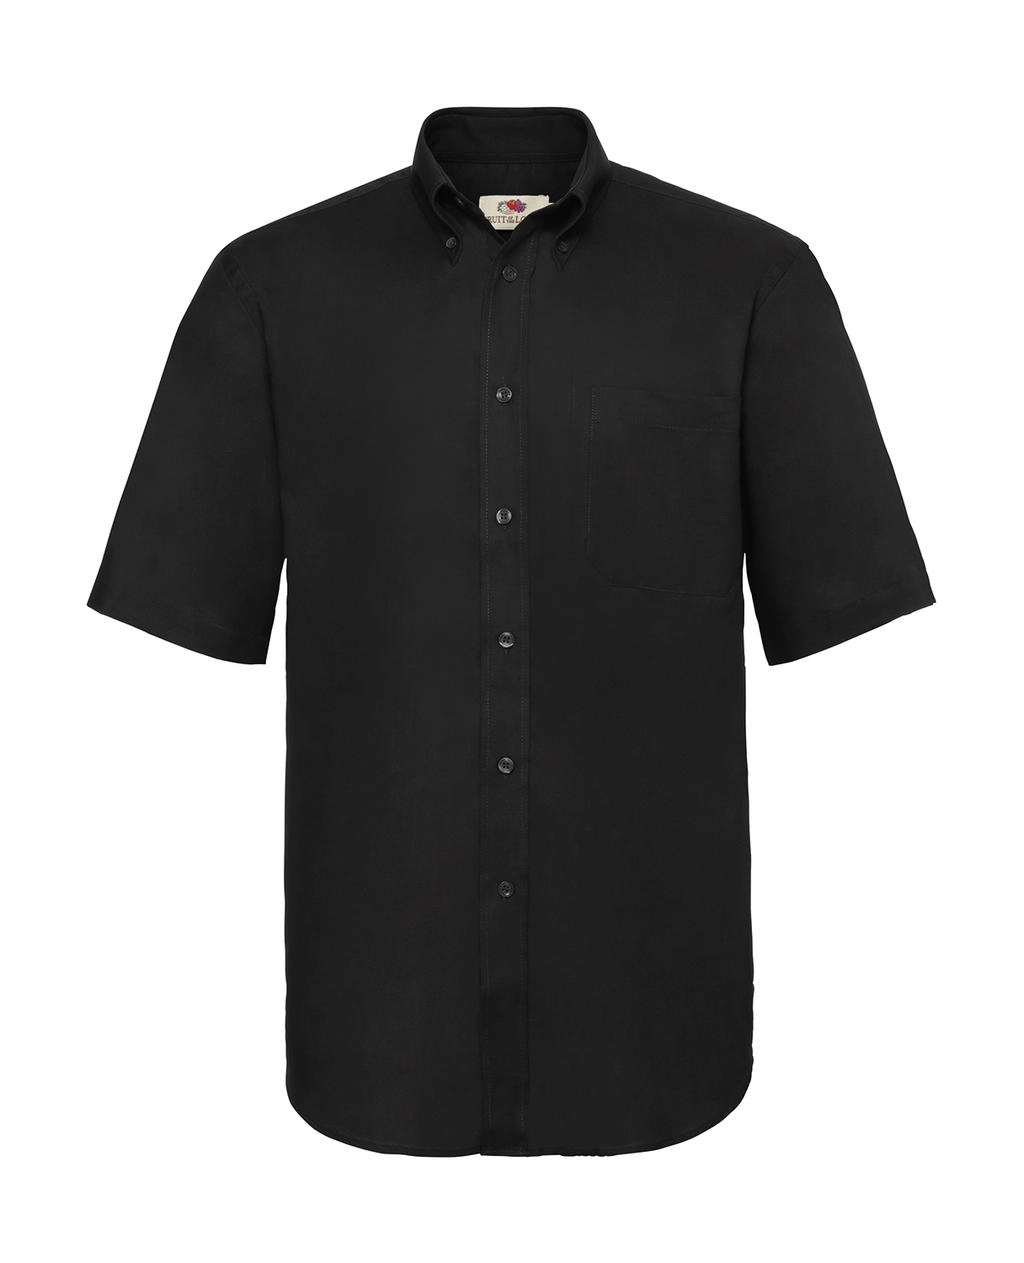 Oxford Shirt zum Besticken und Bedrucken in der Farbe Black mit Ihren Logo, Schriftzug oder Motiv.